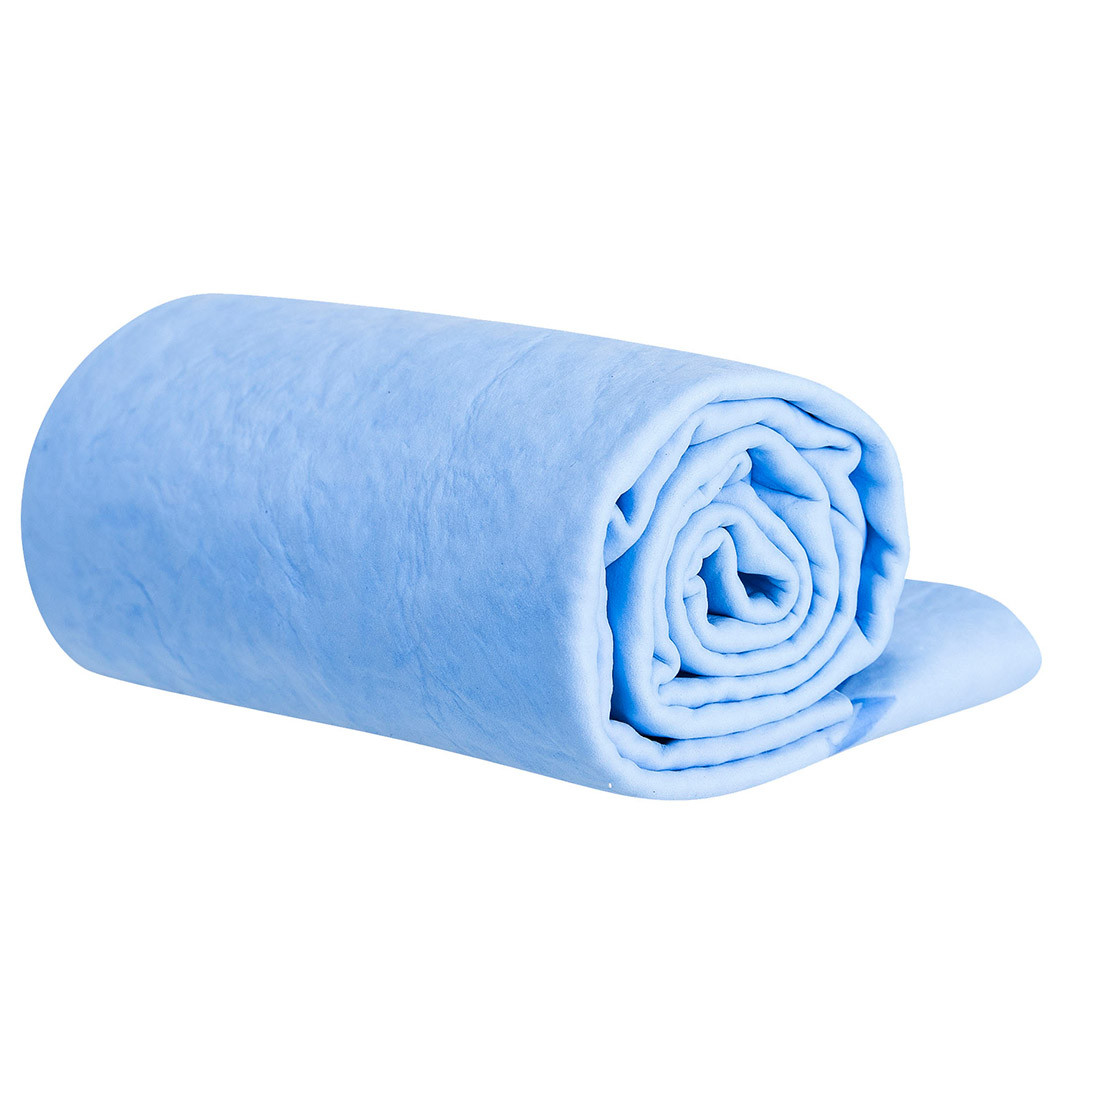 Asciugamano rinfrescante - Equipaggiamenti di protezione personale